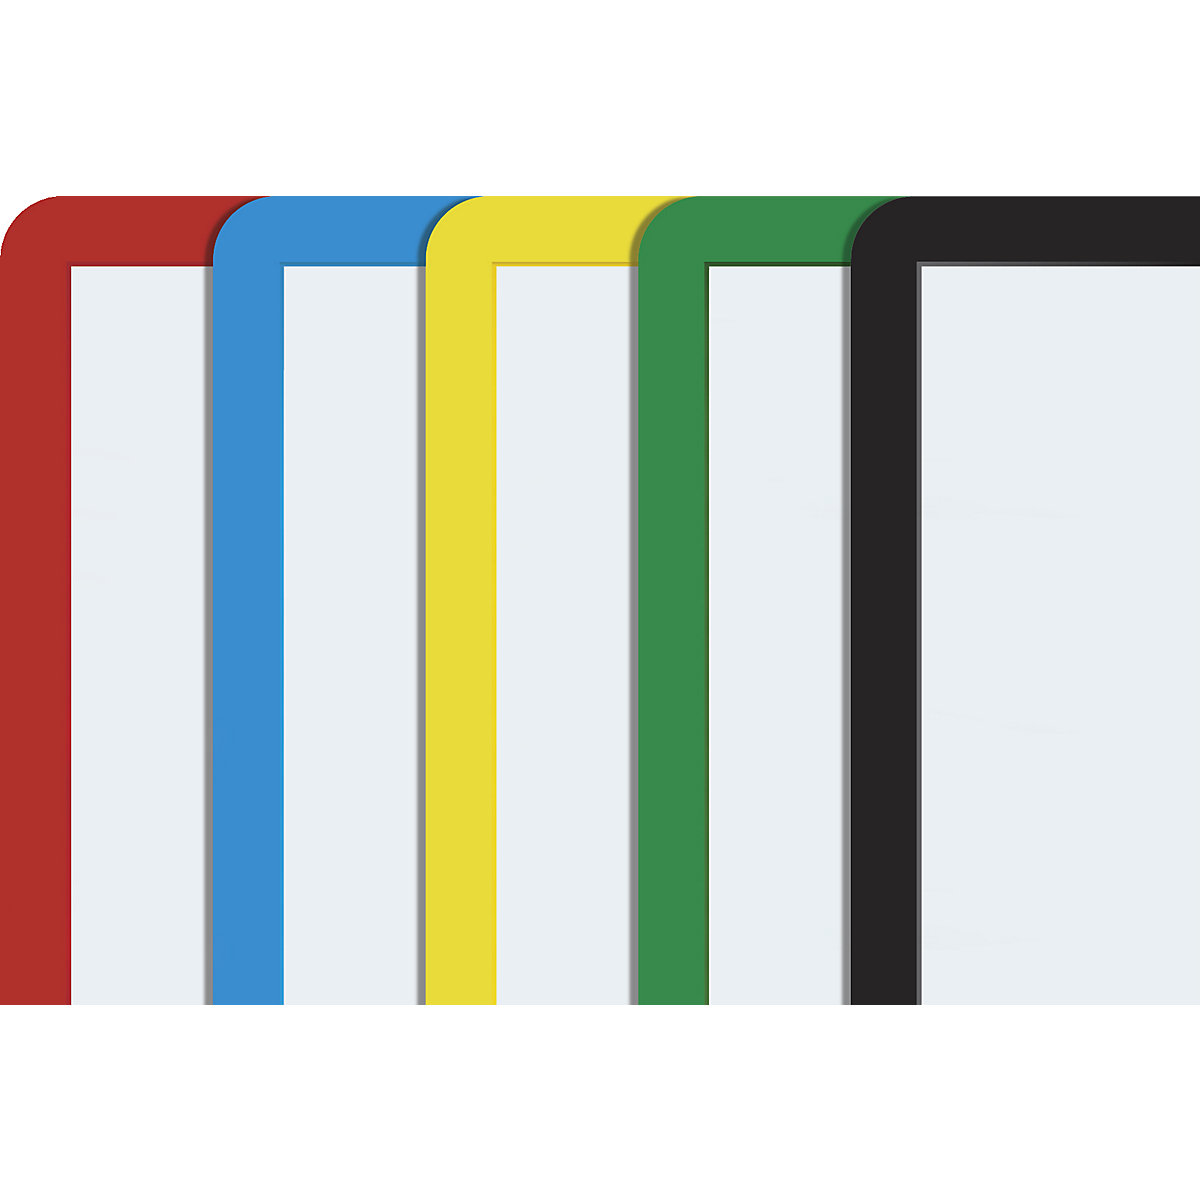 Rahmen mit Klarsichtfolie, Papierformat A5, VE 10 Stk, selbstklebend, farbig sortiert